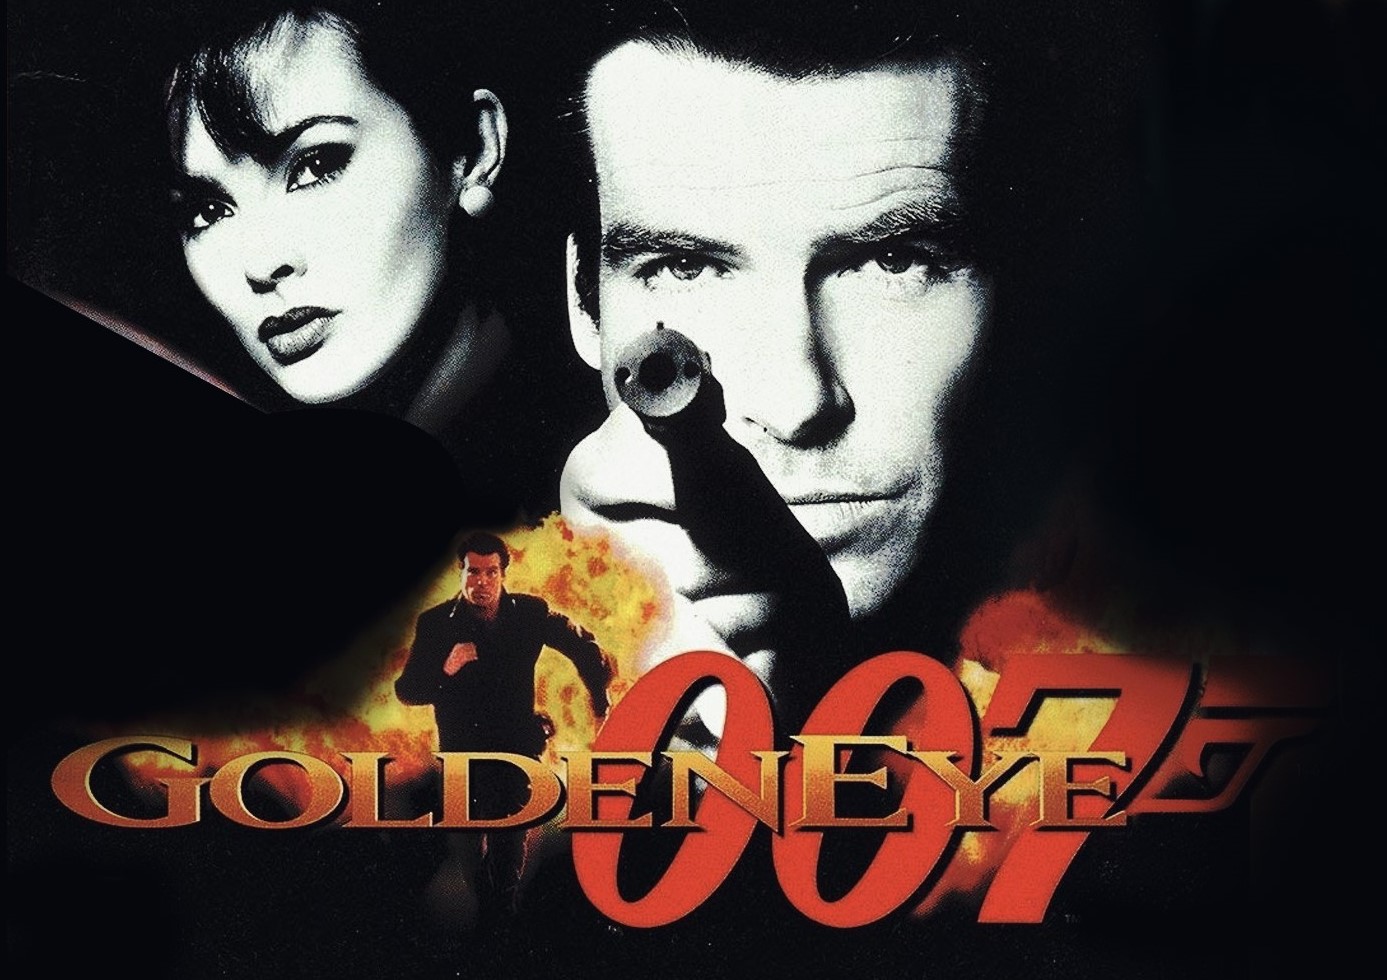 n64 goldeneye 007 download